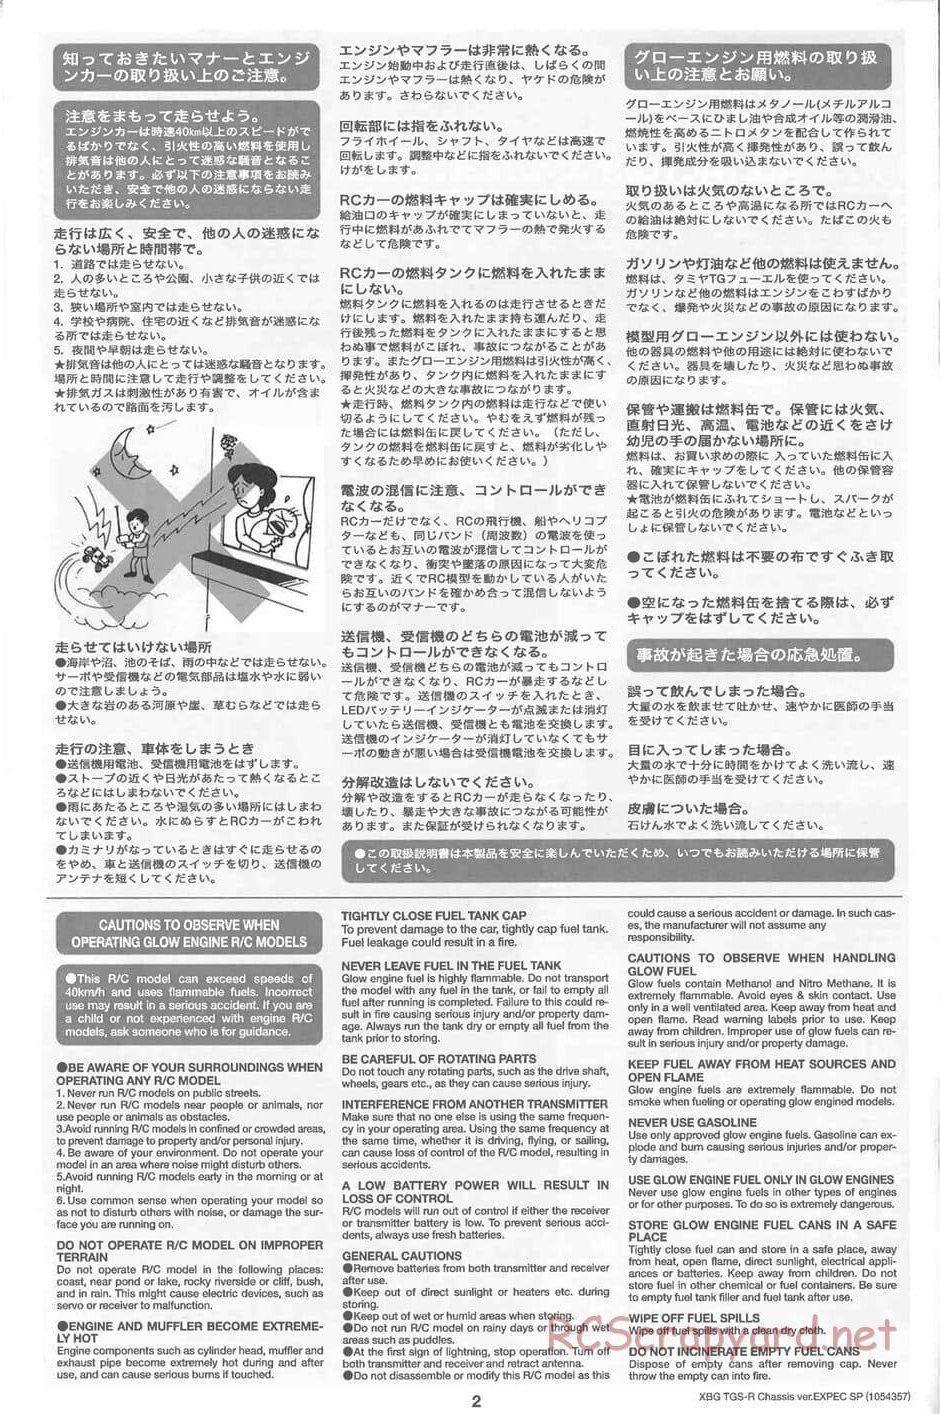 Tamiya - TGS-R Chassis - Manual - Page 2